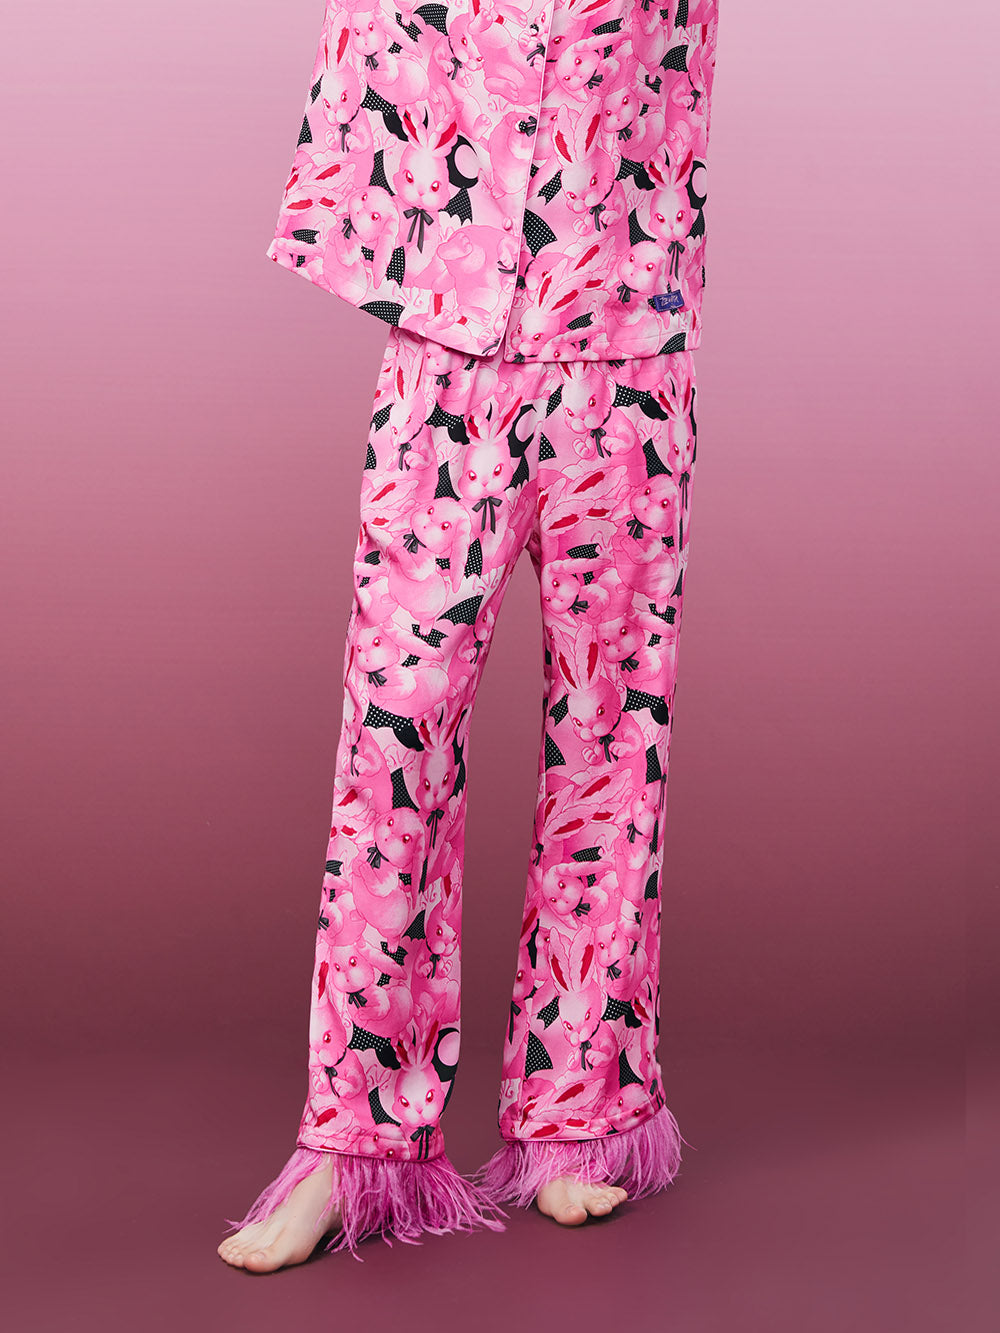 MUKZIN Charming New Soft Pajama Set